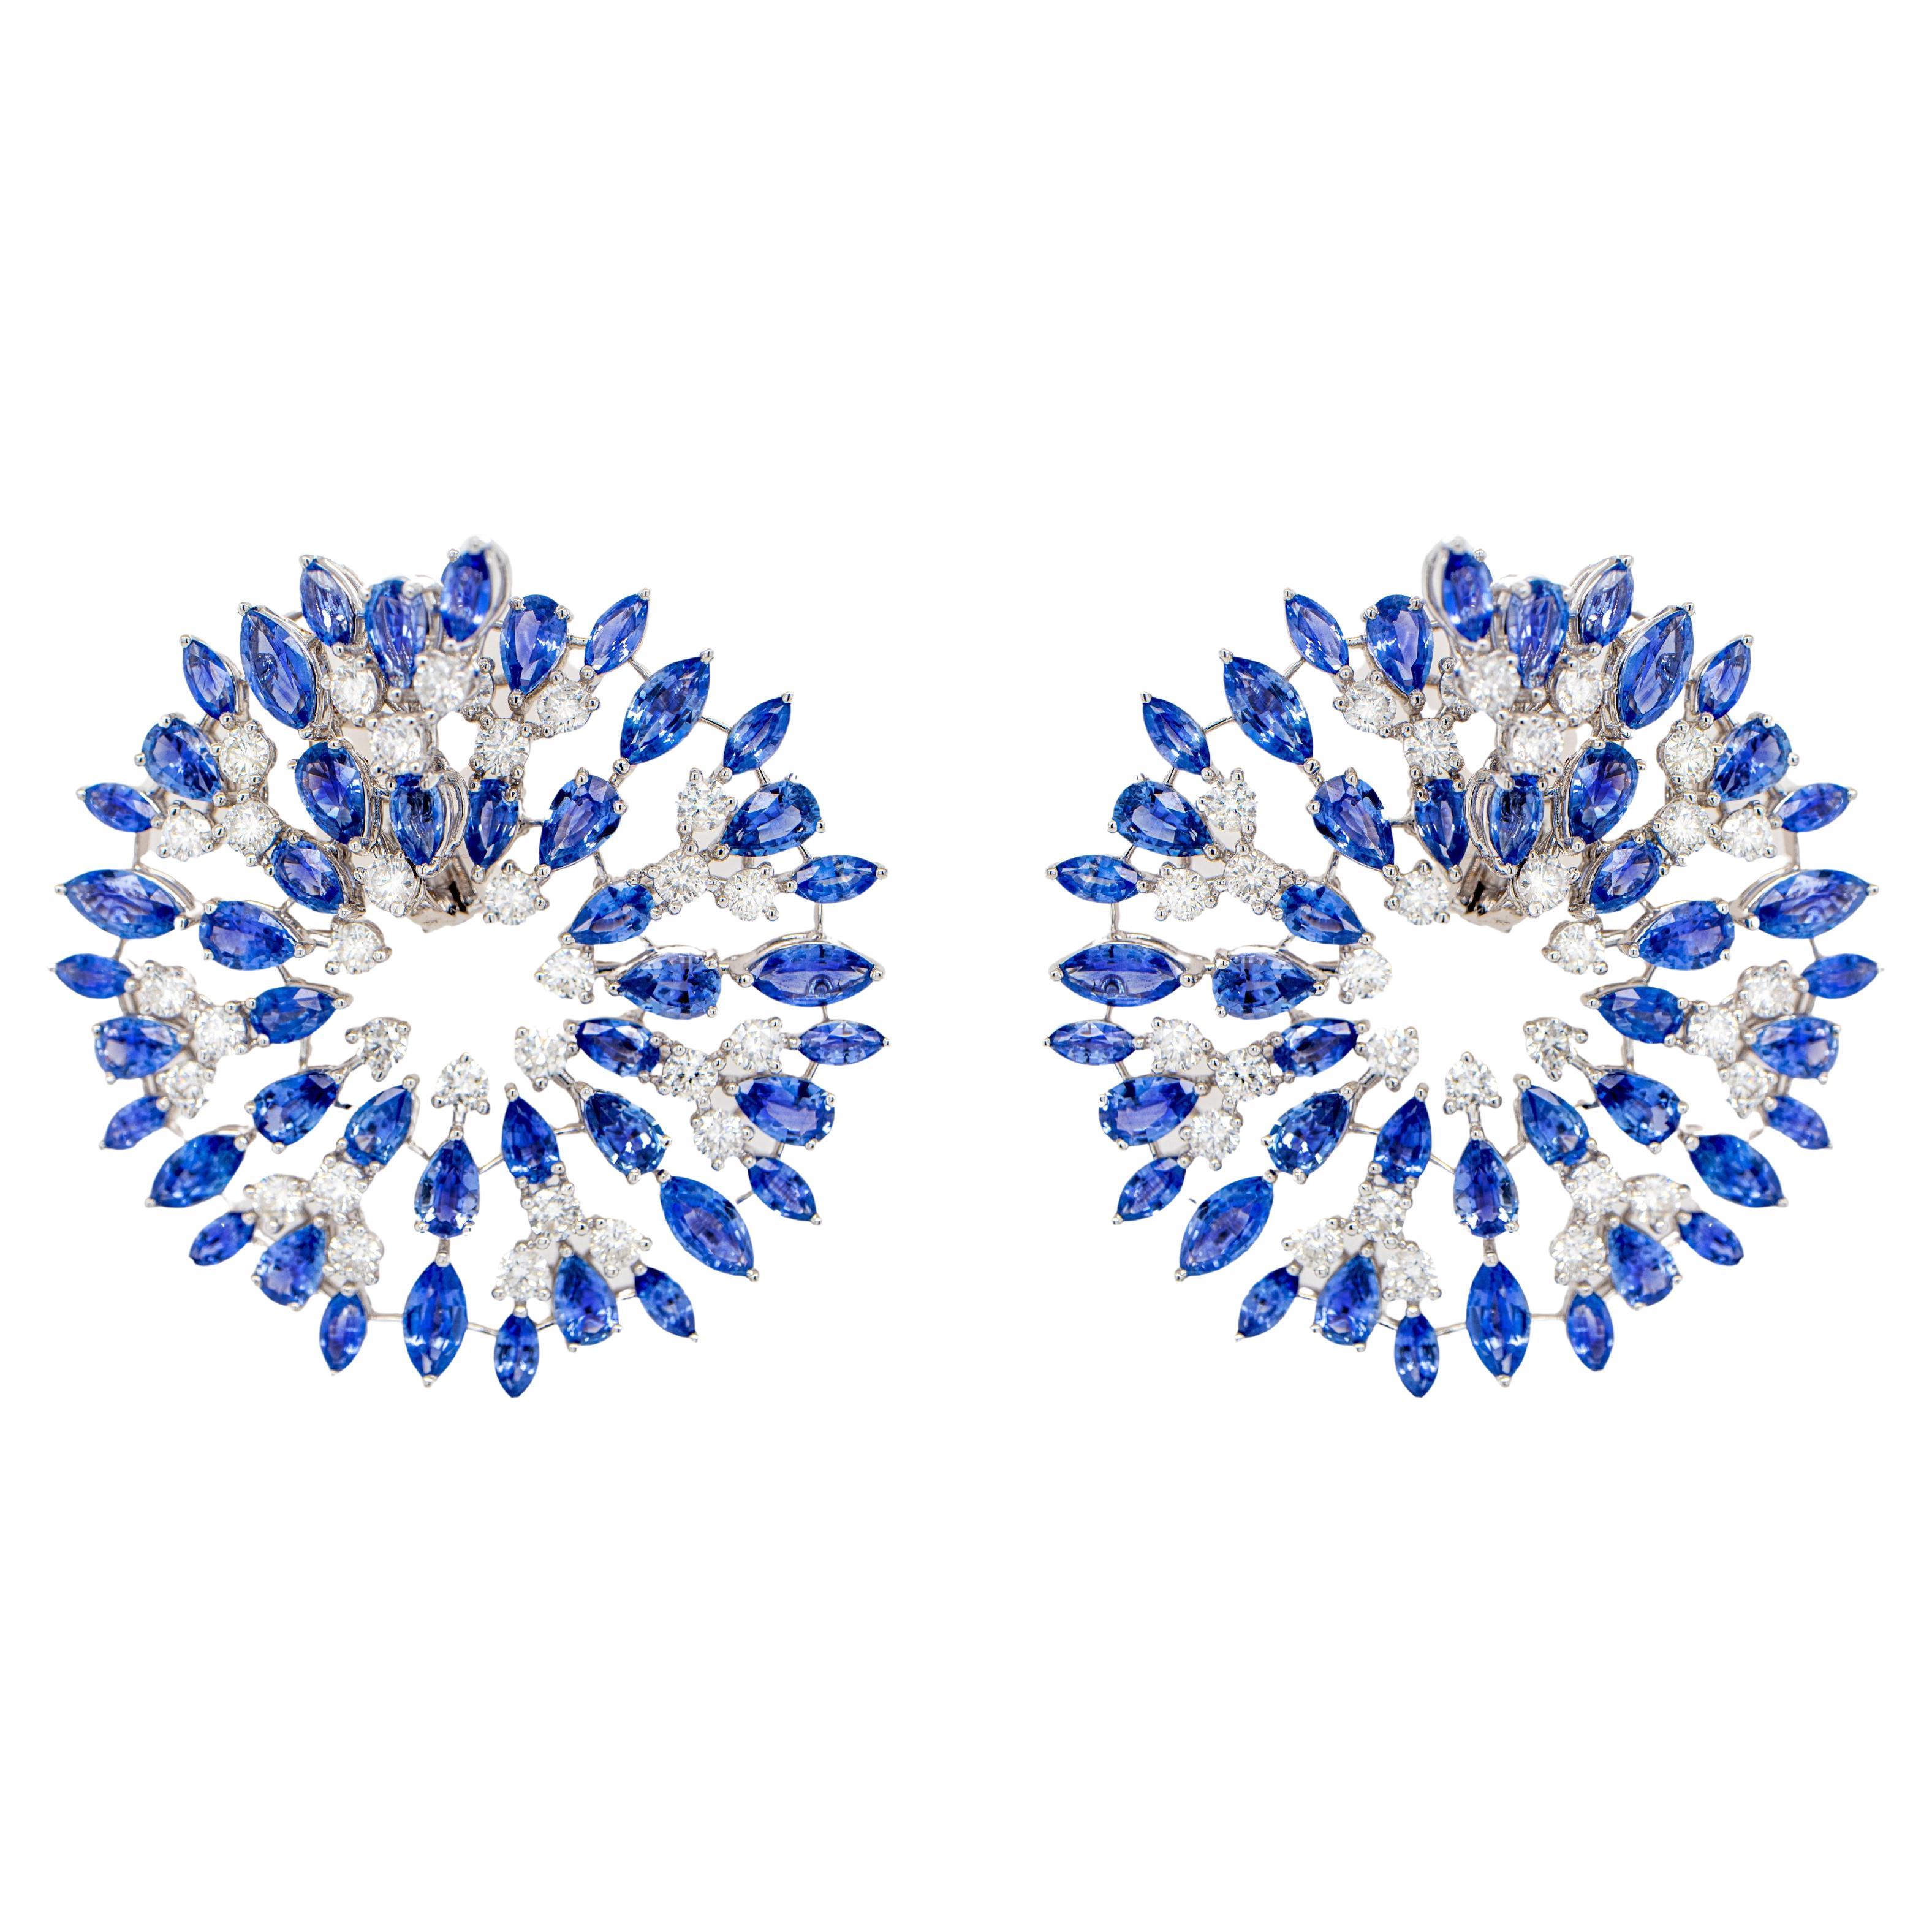 Boucles d'oreilles importantes en saphir bleu et diamant 26 carats or 18K